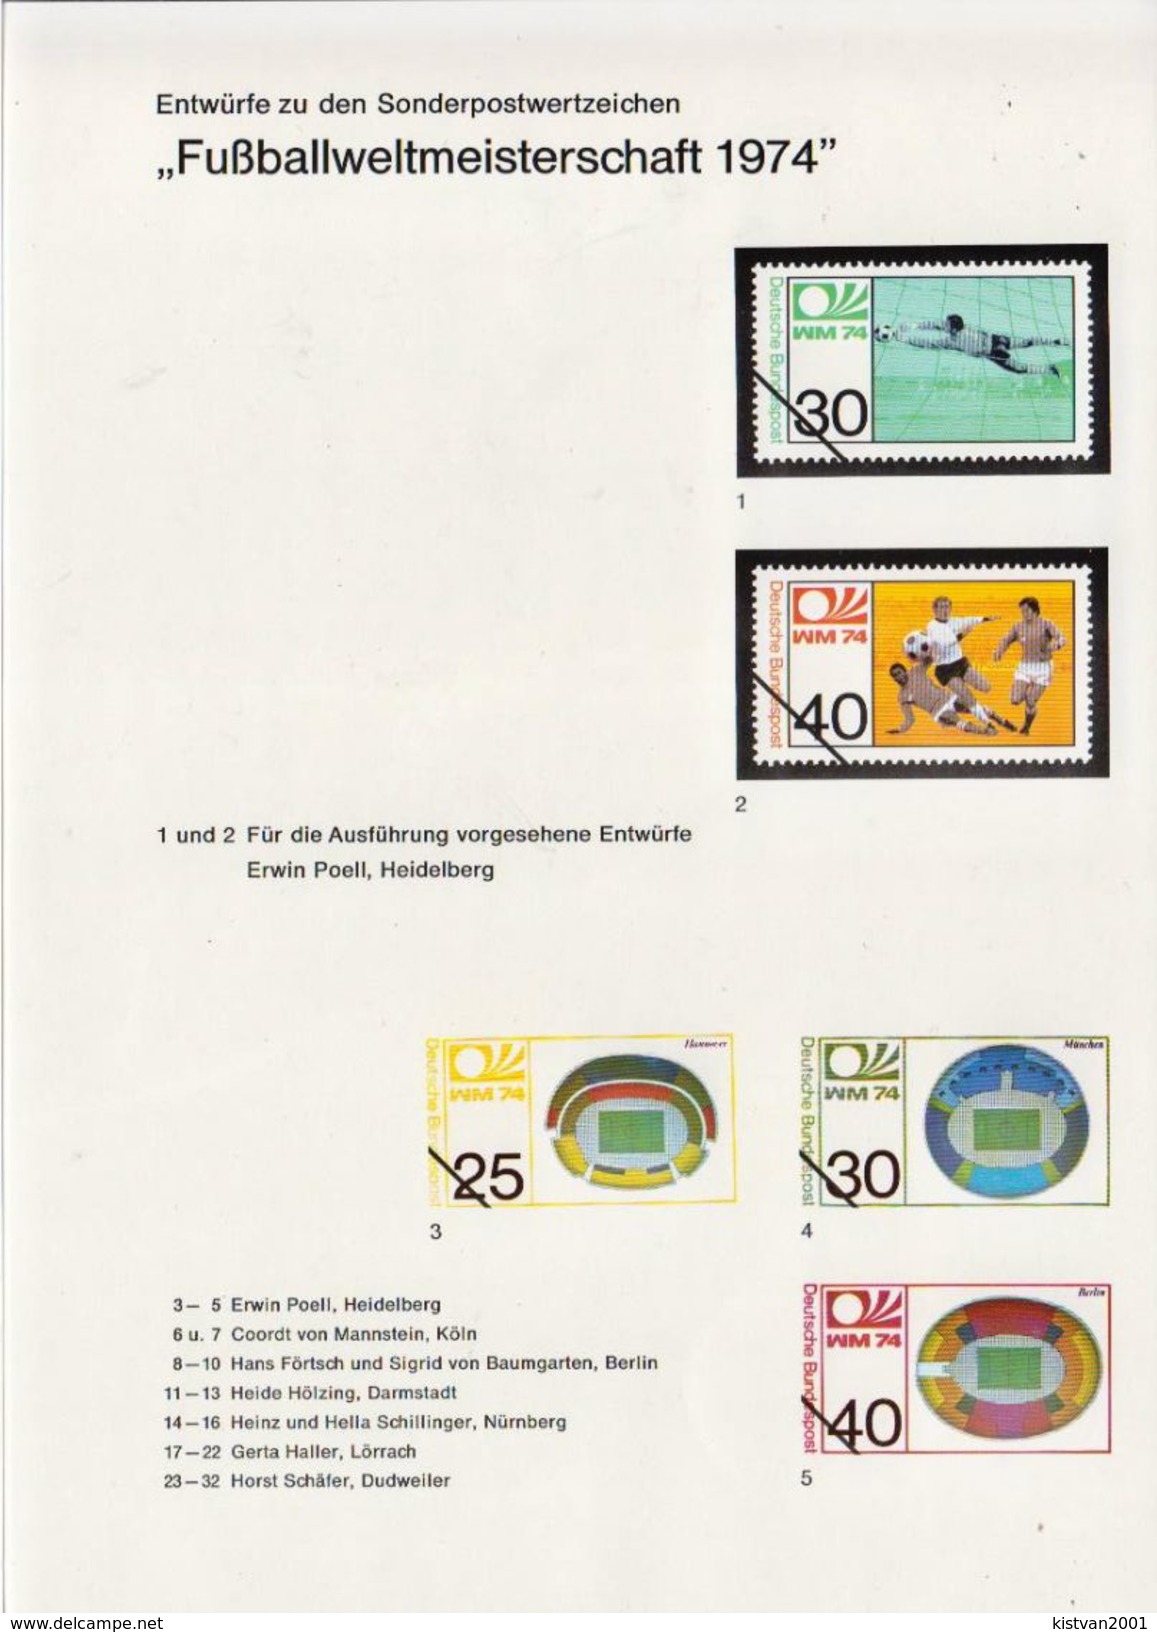 Germany Football World Cup Stamps Designs On 3 Leaflets - 1974 – Allemagne Fédérale